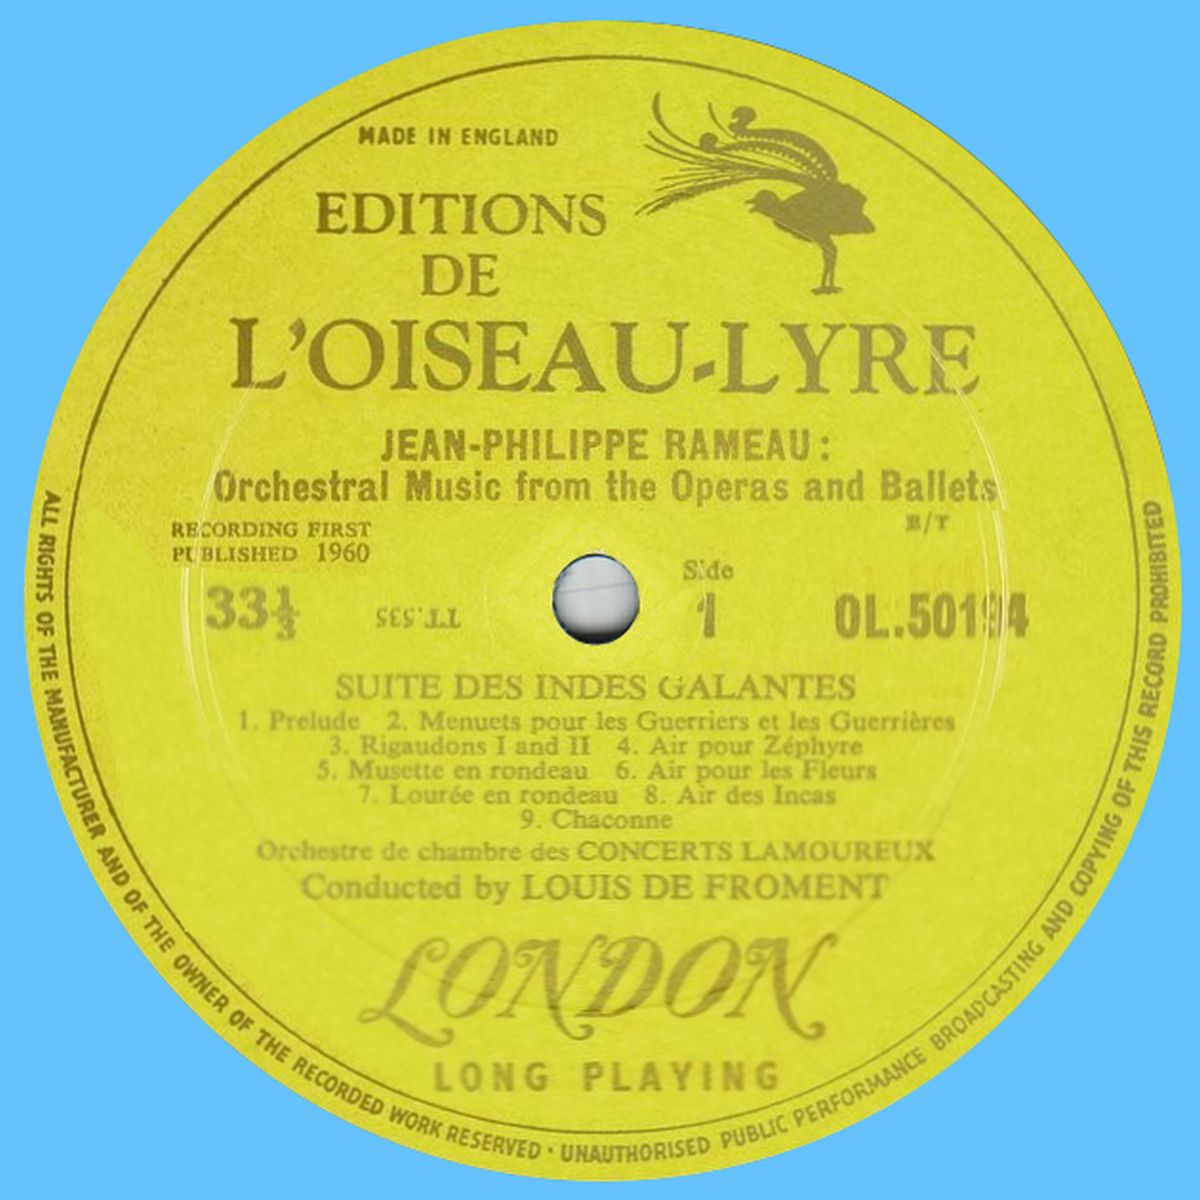 «Éditions de l'Oiseau-lyre» OL.50194, étiquette recto